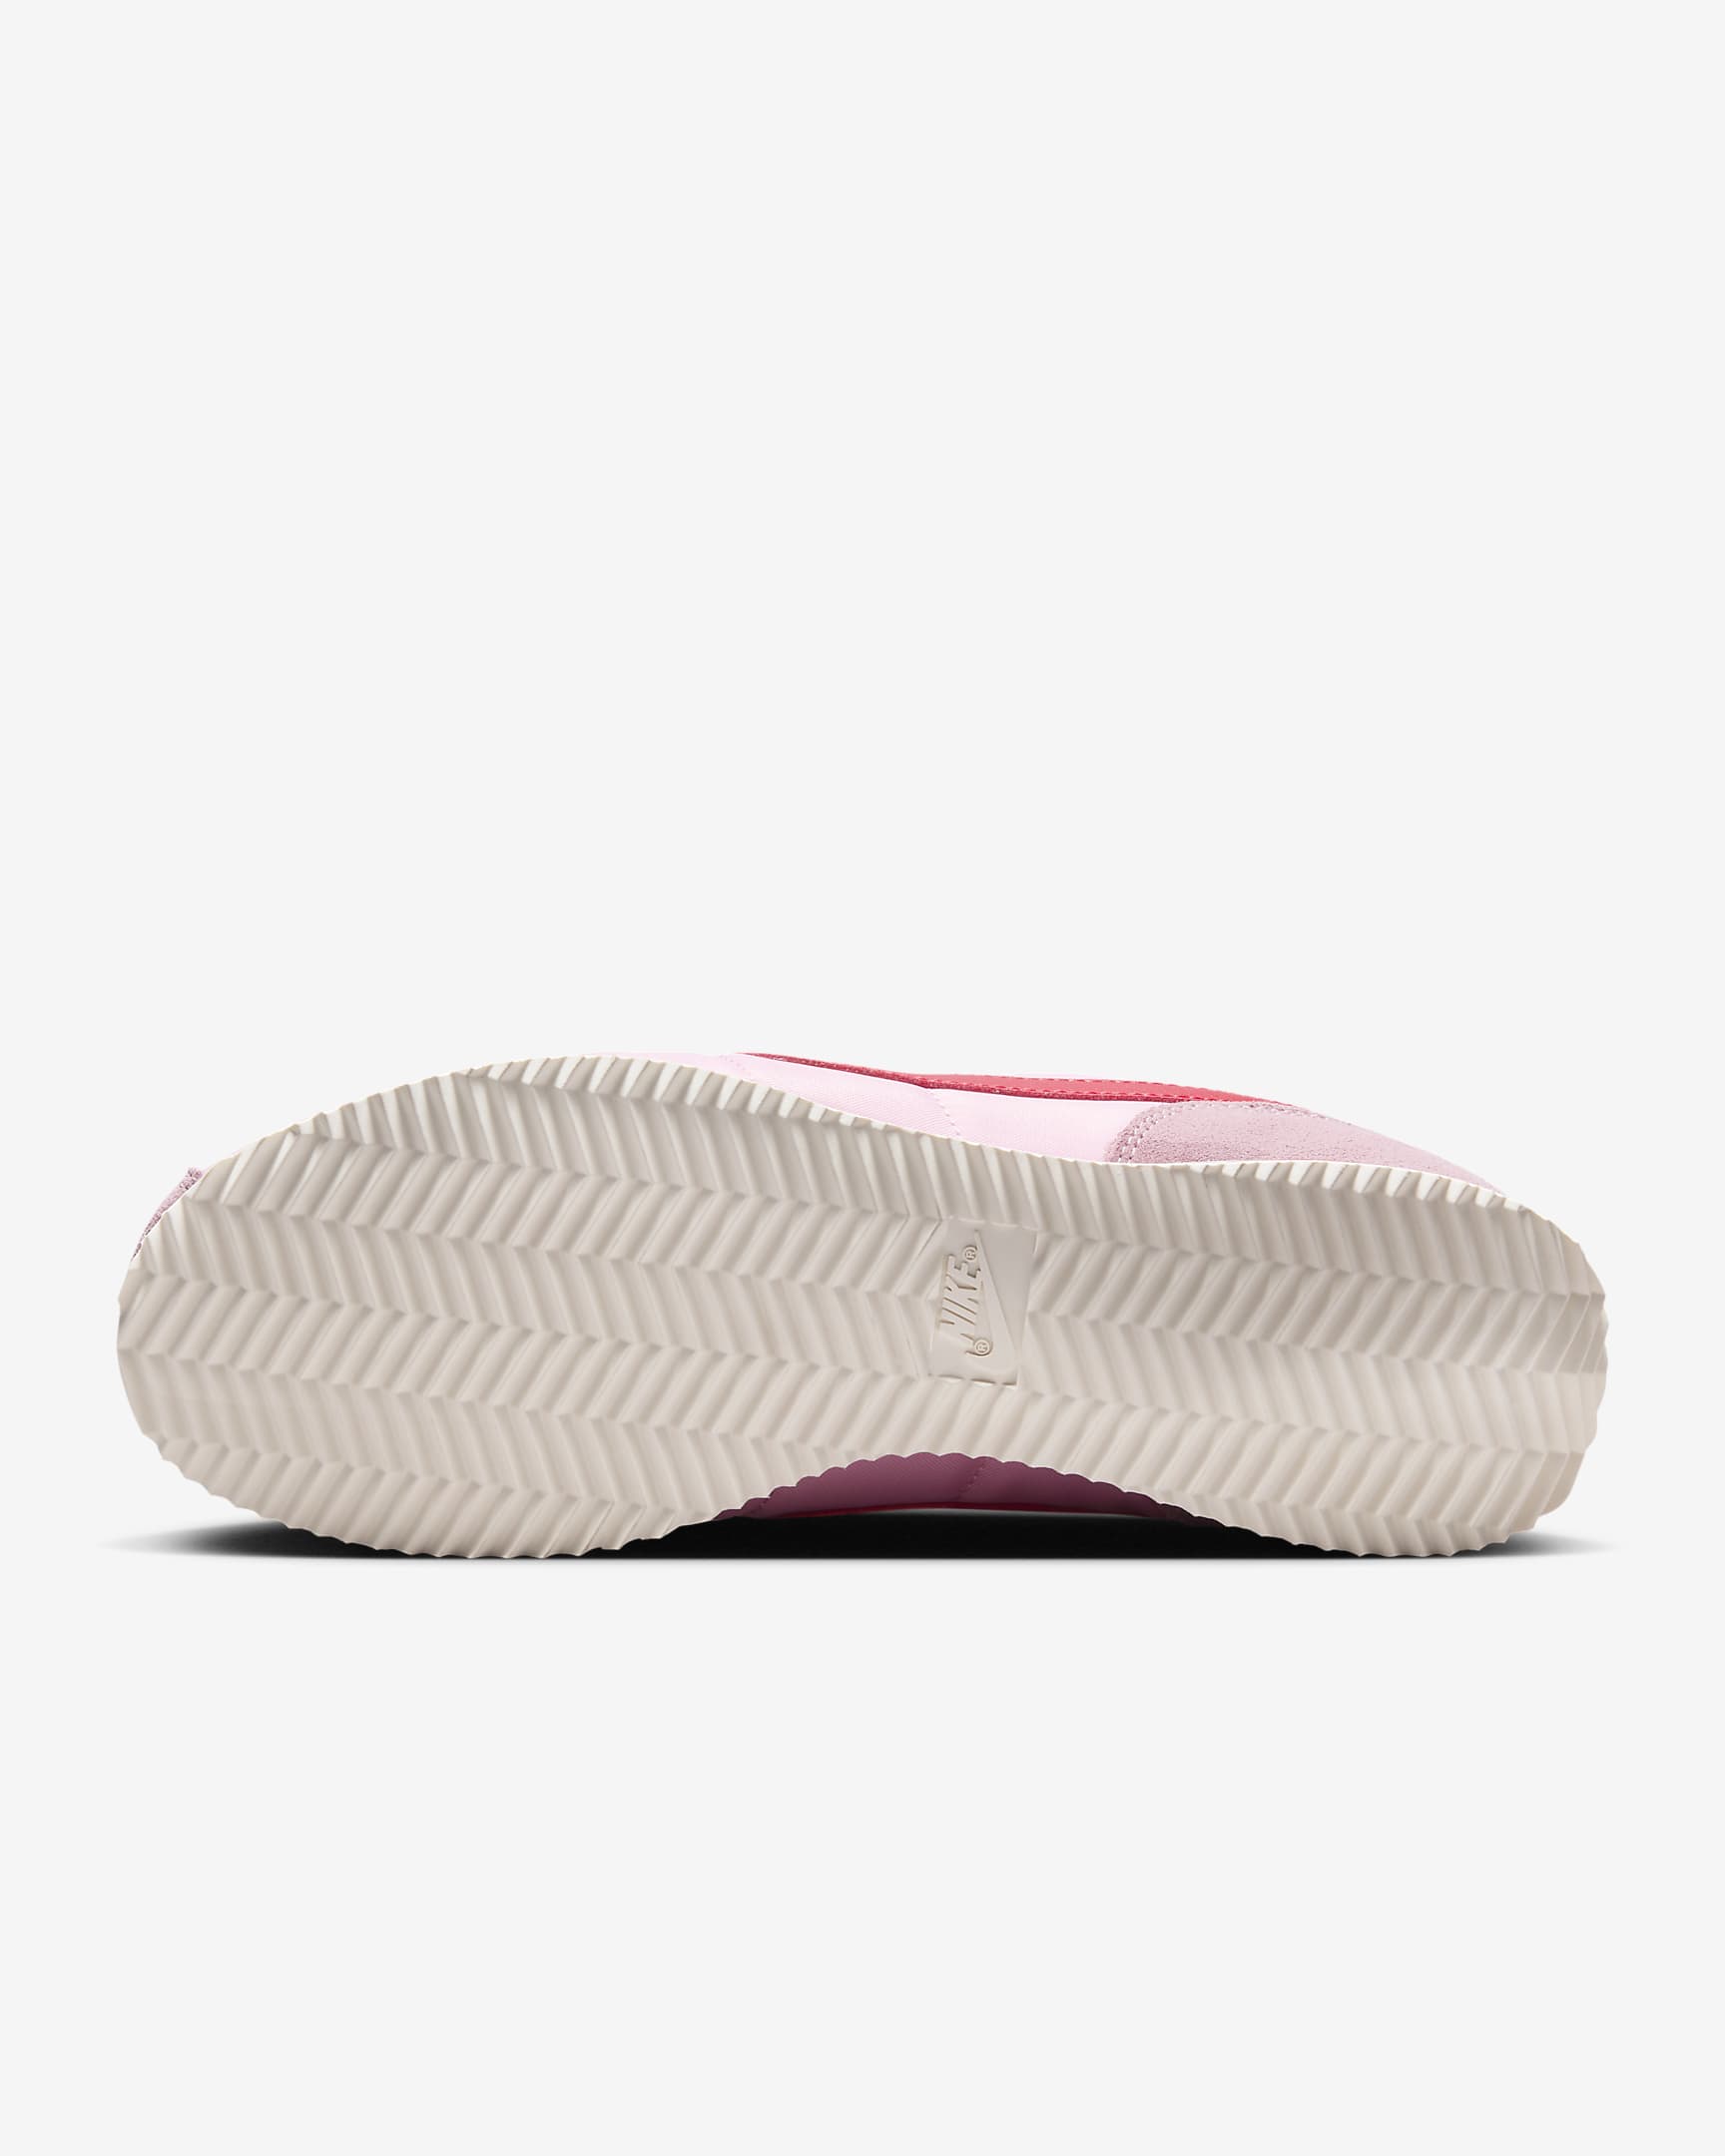 Chaussure Nike Cortez Textile - Medium Soft Pink/Sail/Team Orange/Fire Red